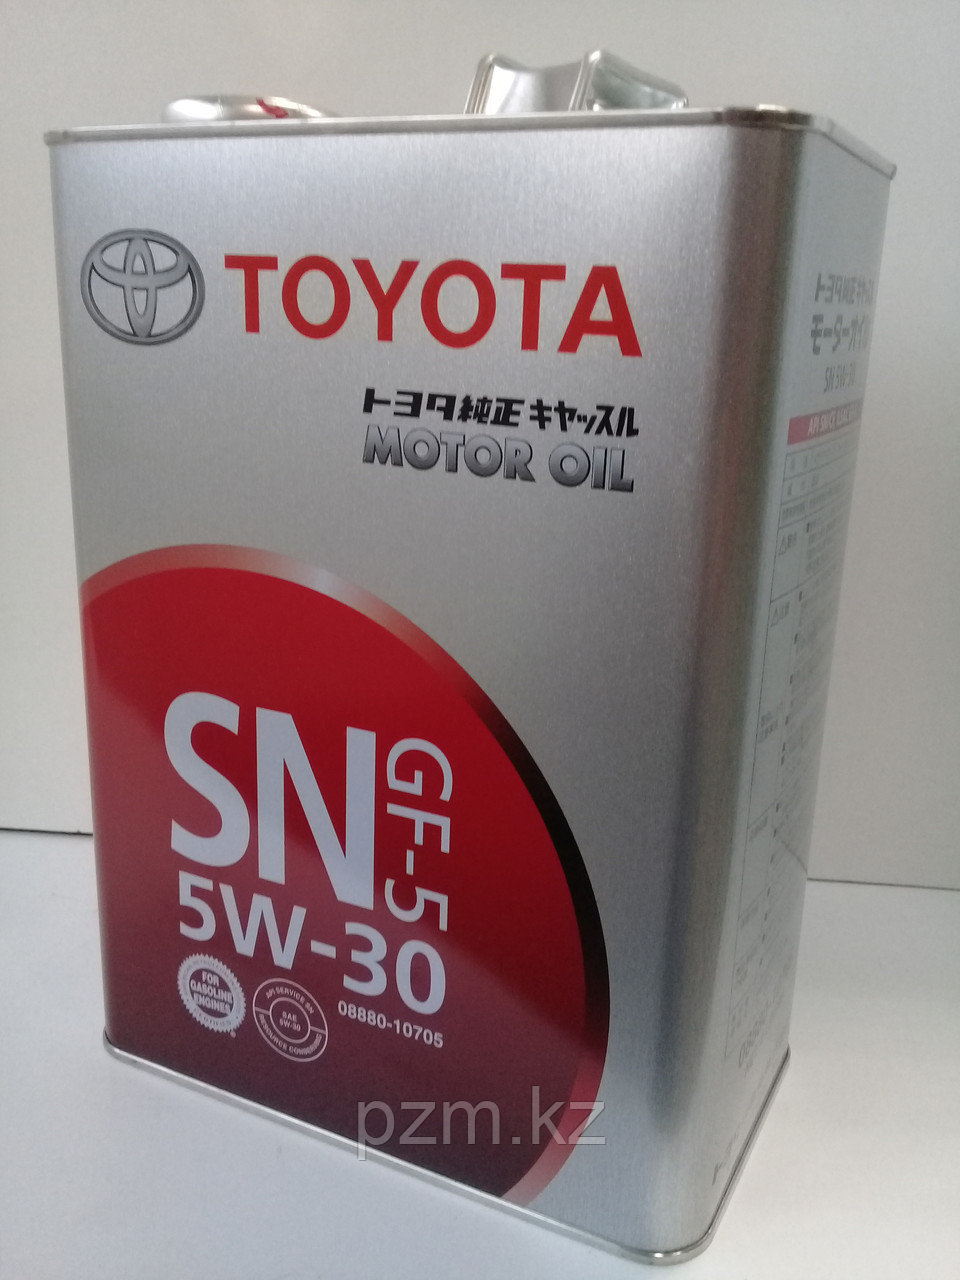 Замена масла в двигателе Toyota Scepter 2.2i (масло + фильтр)  оригинальное моторное масло тойота 5W30